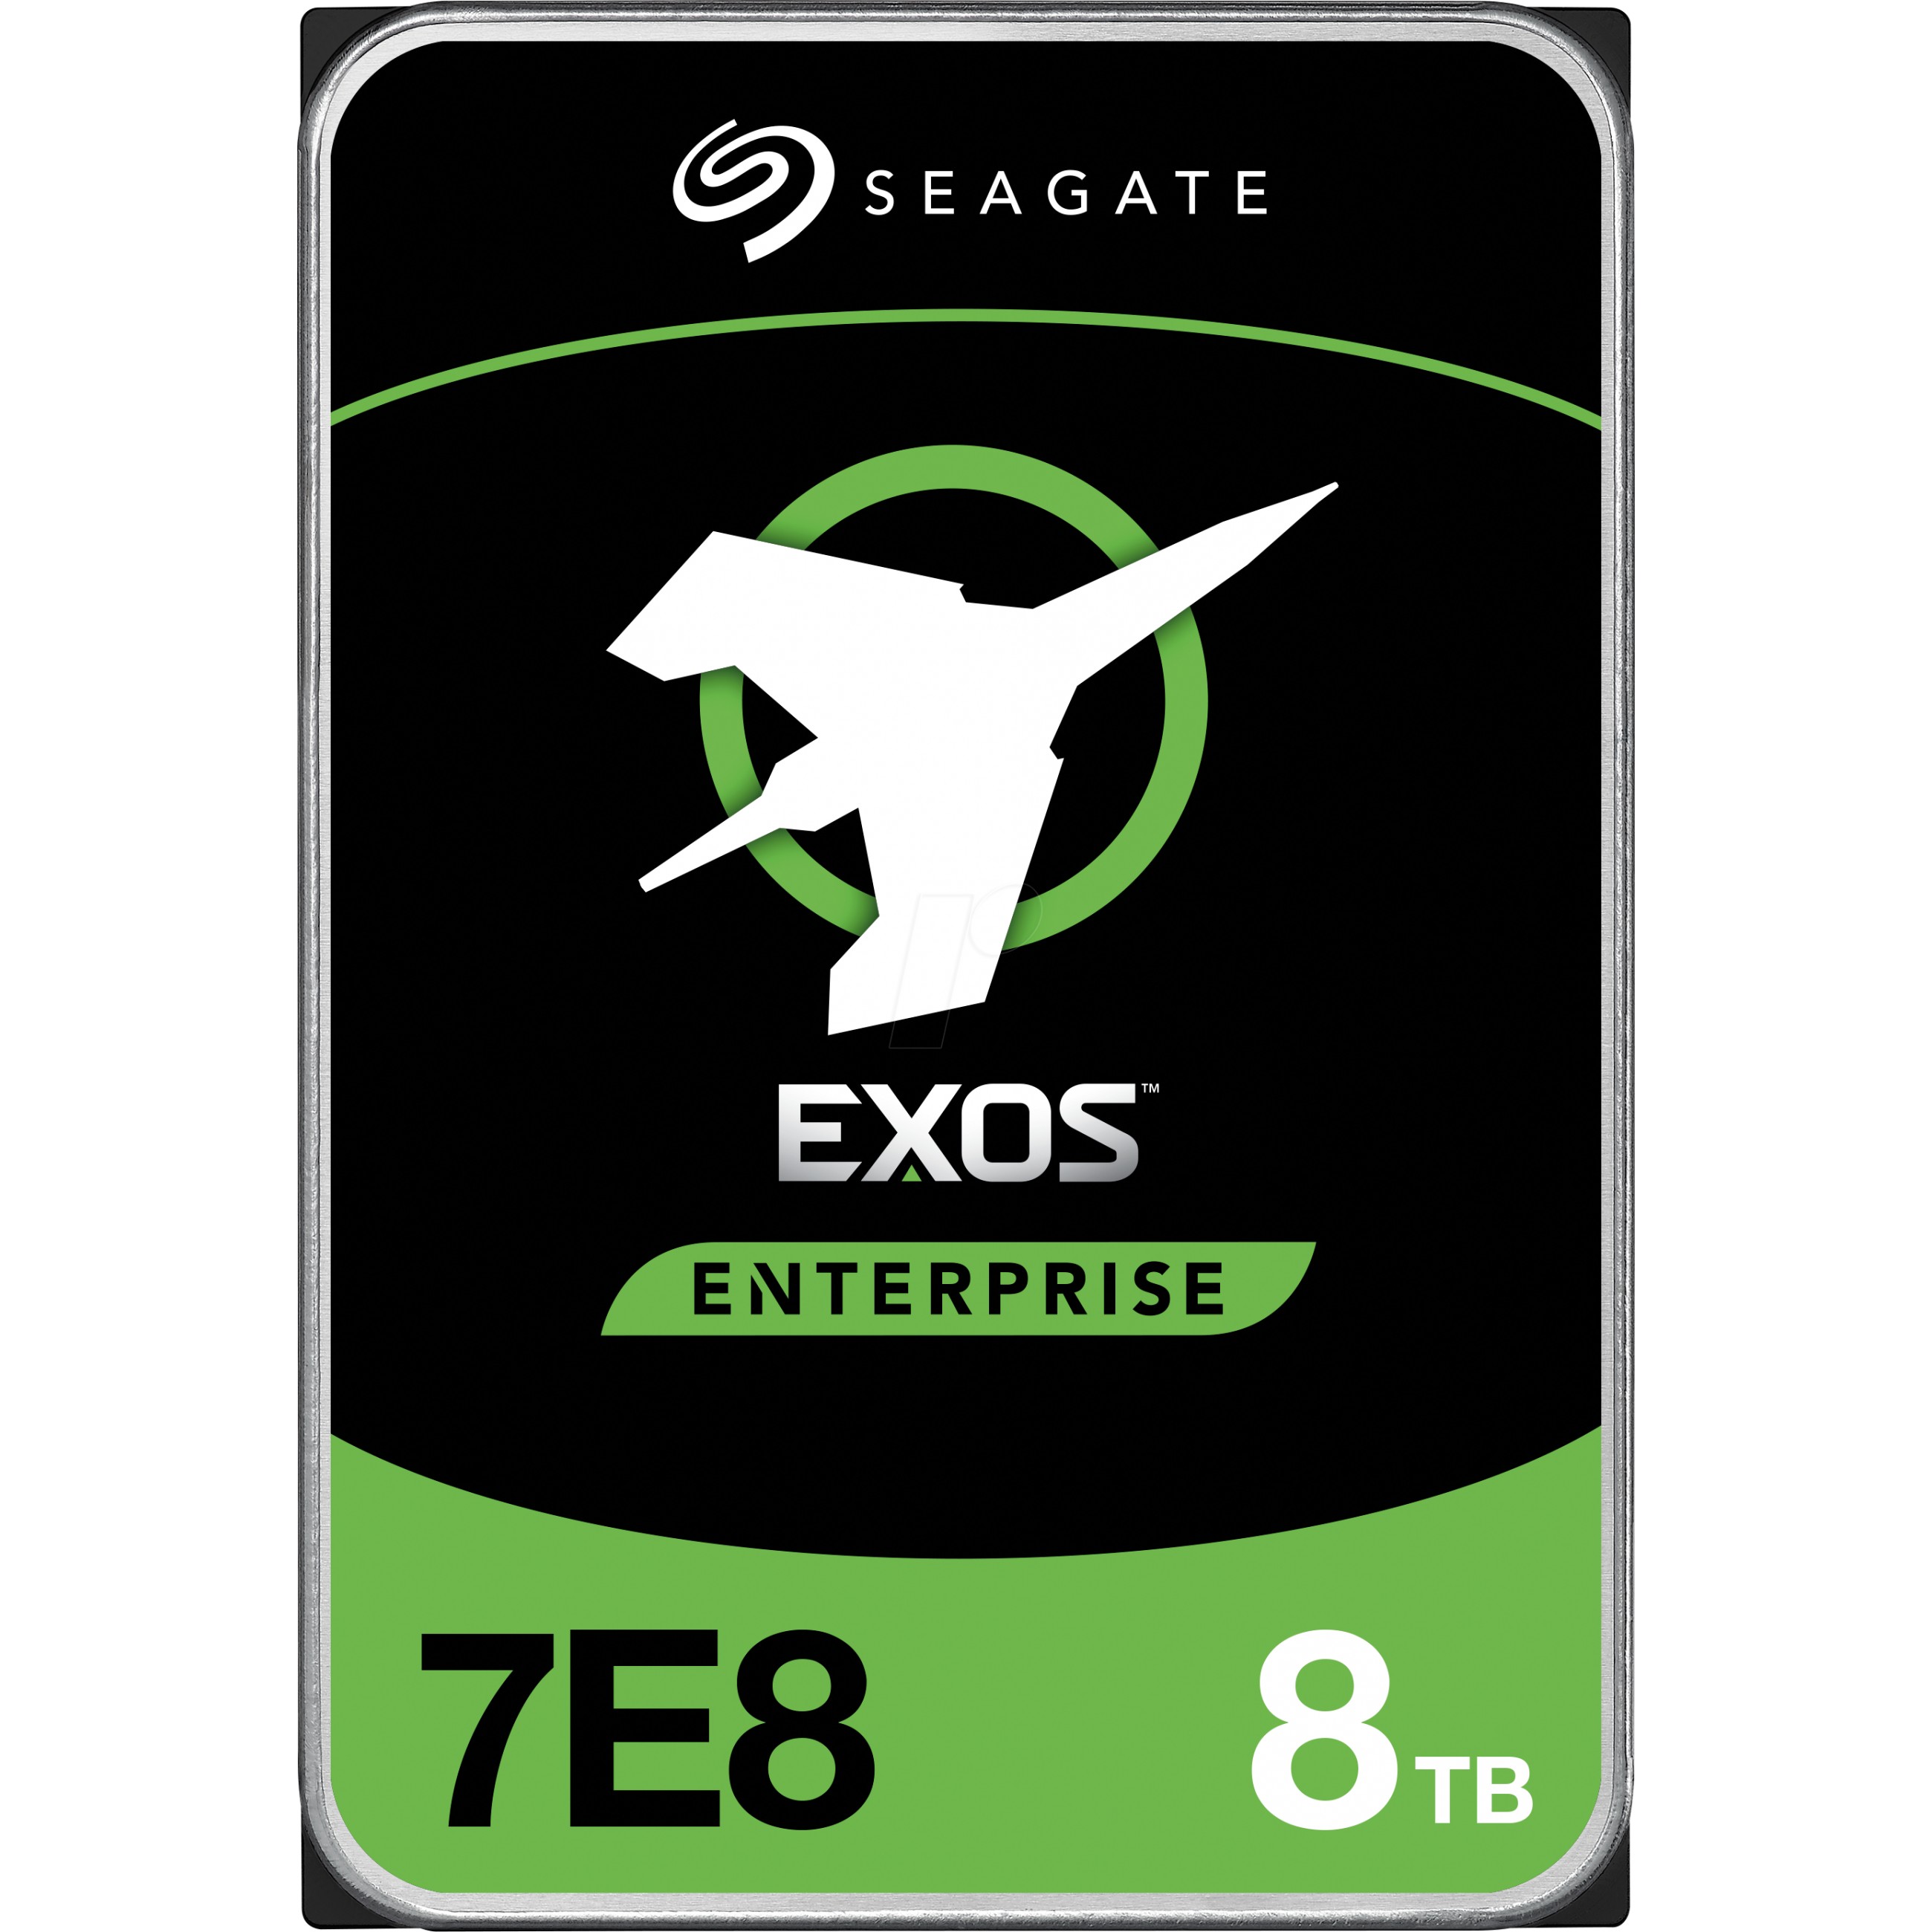 Seagate Enterprise ST8000NM000A internal hard drive